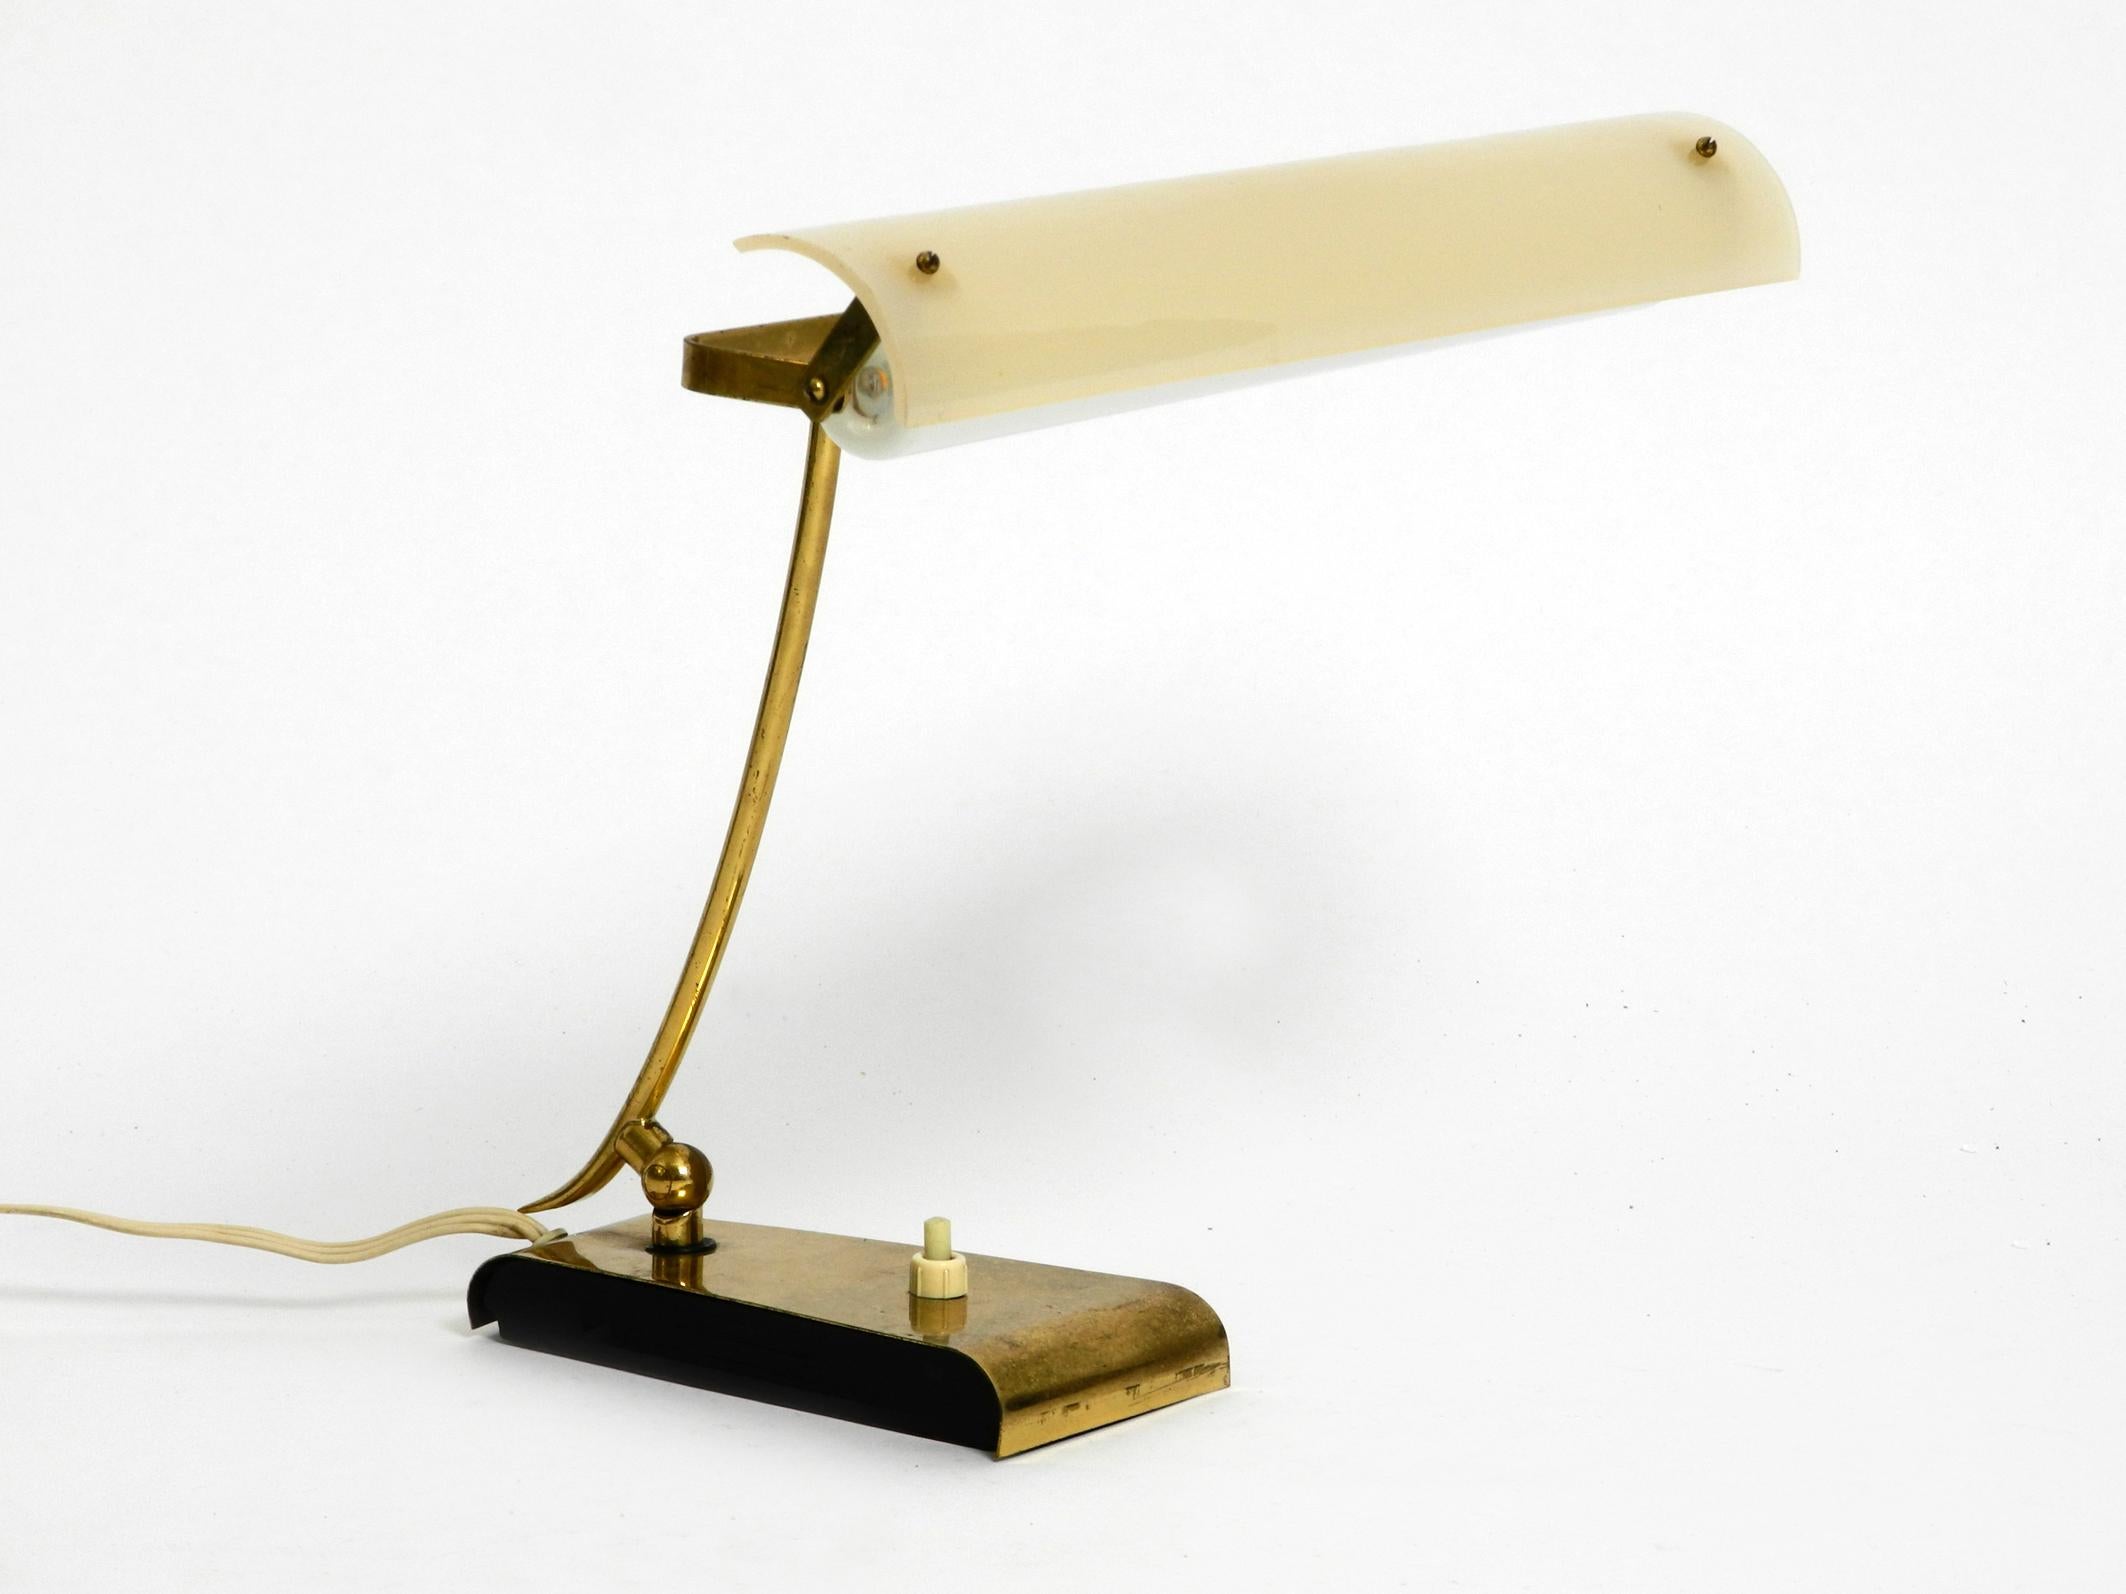 Très rare lampe de table moderne du milieu du siècle en laiton avec un abat-jour mobile en plexiglas.
L'ensemble de la lampe est en laiton. Avec une ampoule longue à brancher.
Idéal comme lampe de lecture et de bureau. Belle lumière à travers